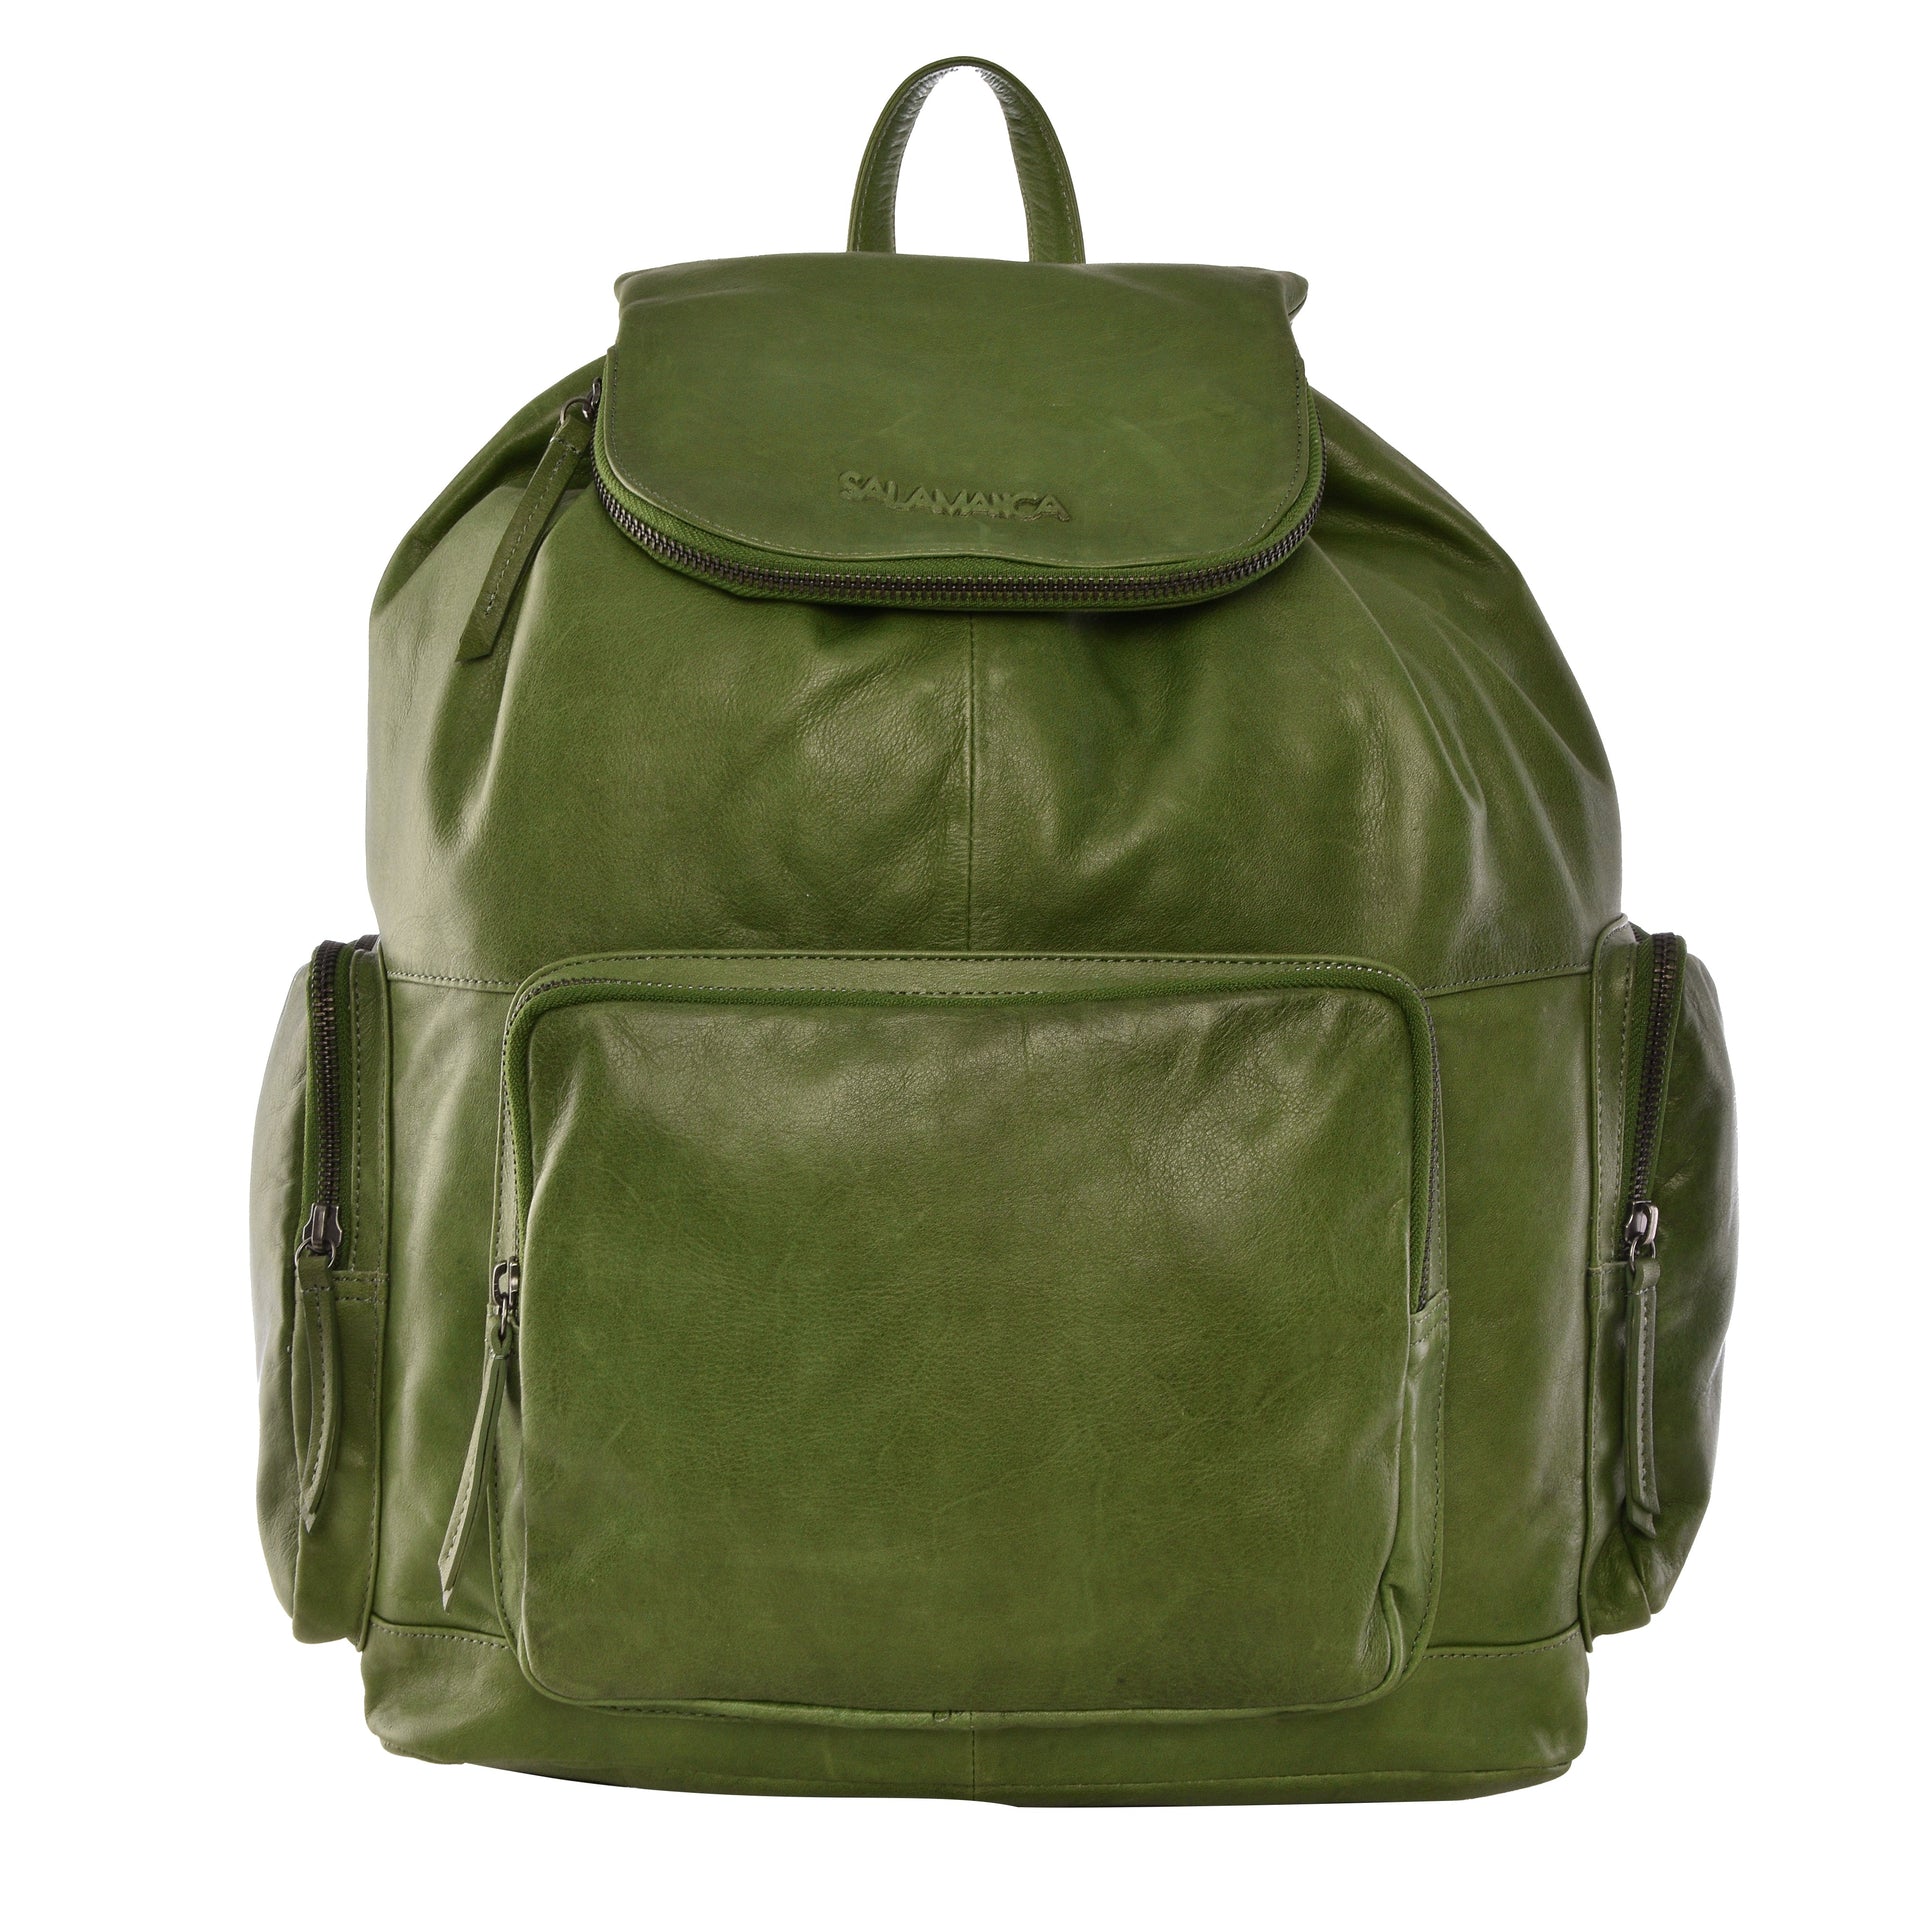 Arnos Backpack - Leaf Green - Backpack